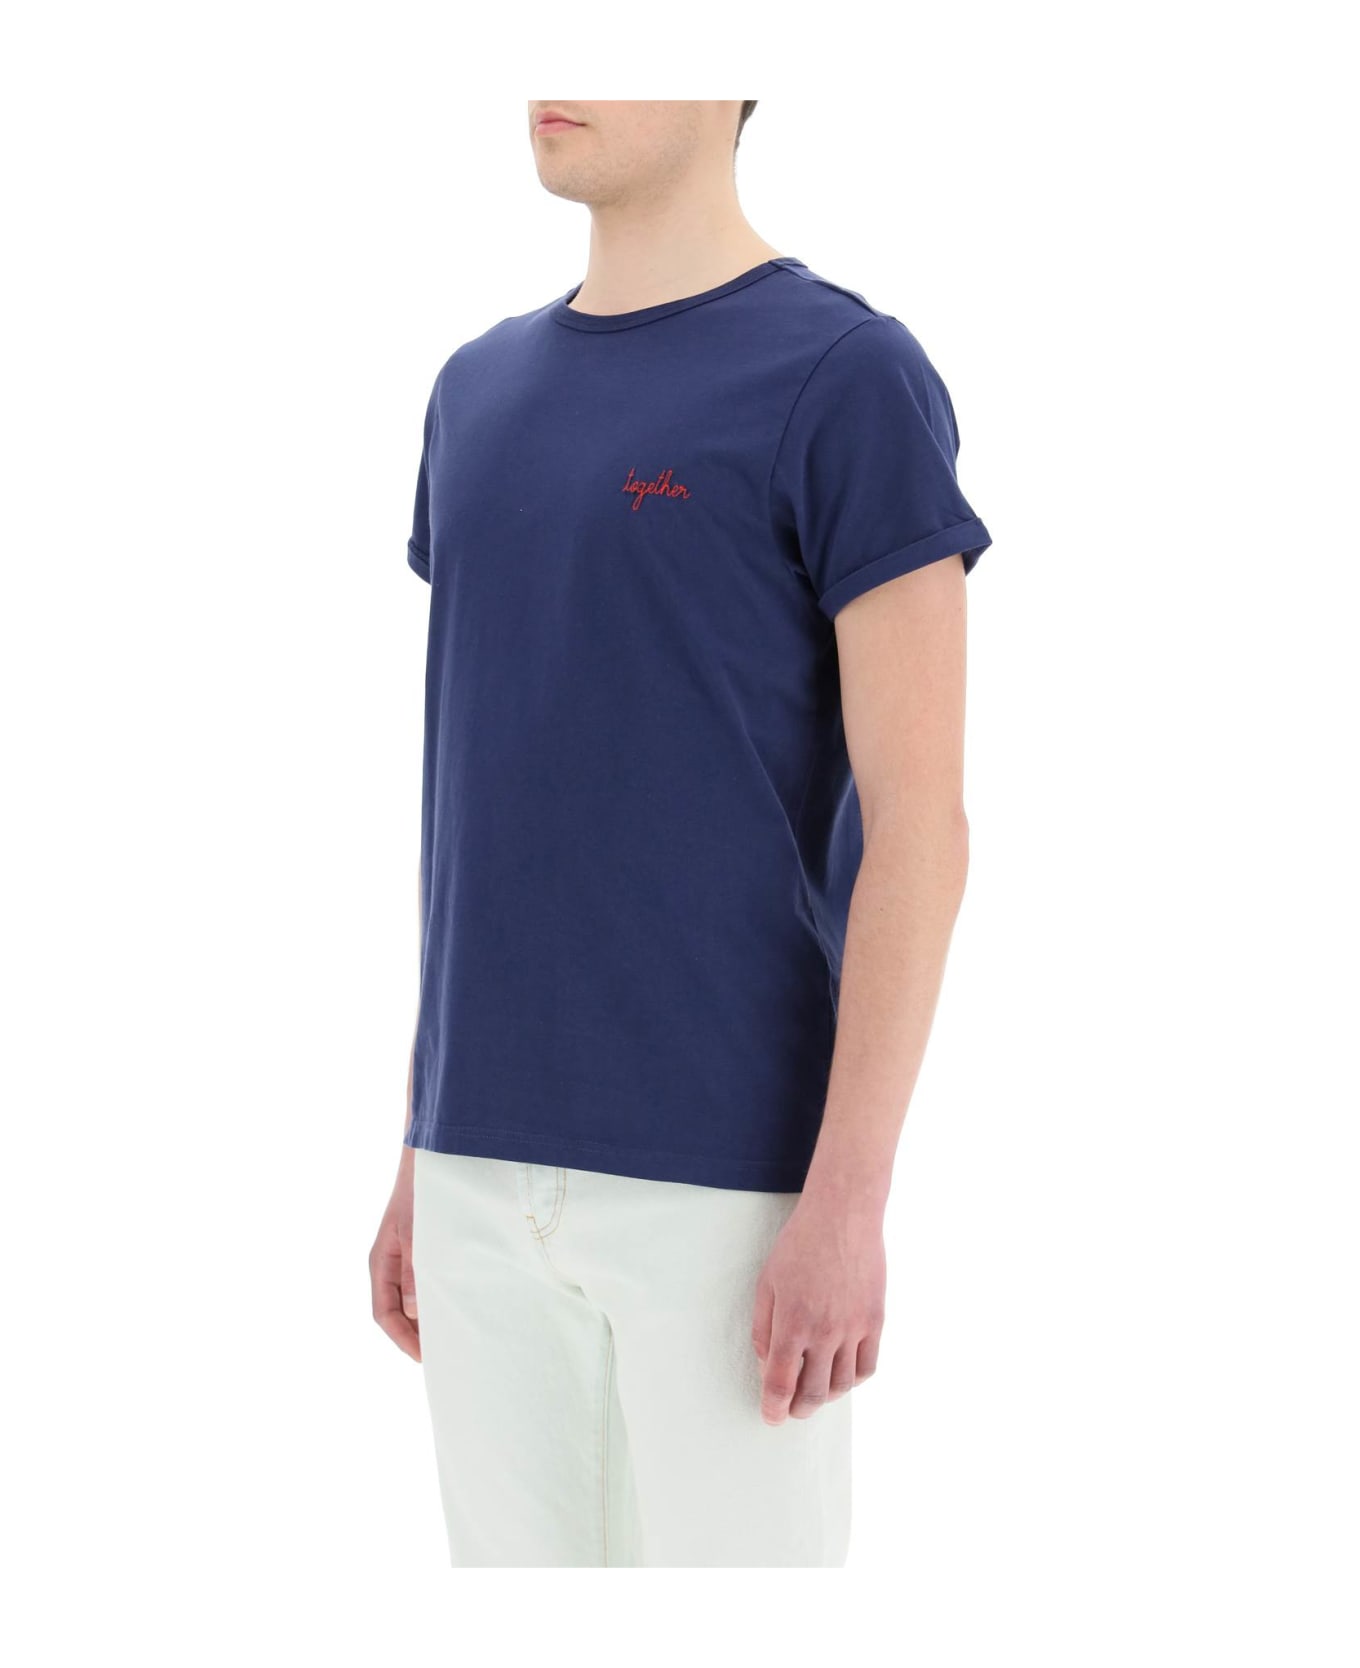 Maison Labiche "together" Villiers T-shirt - NAVY (Blue)